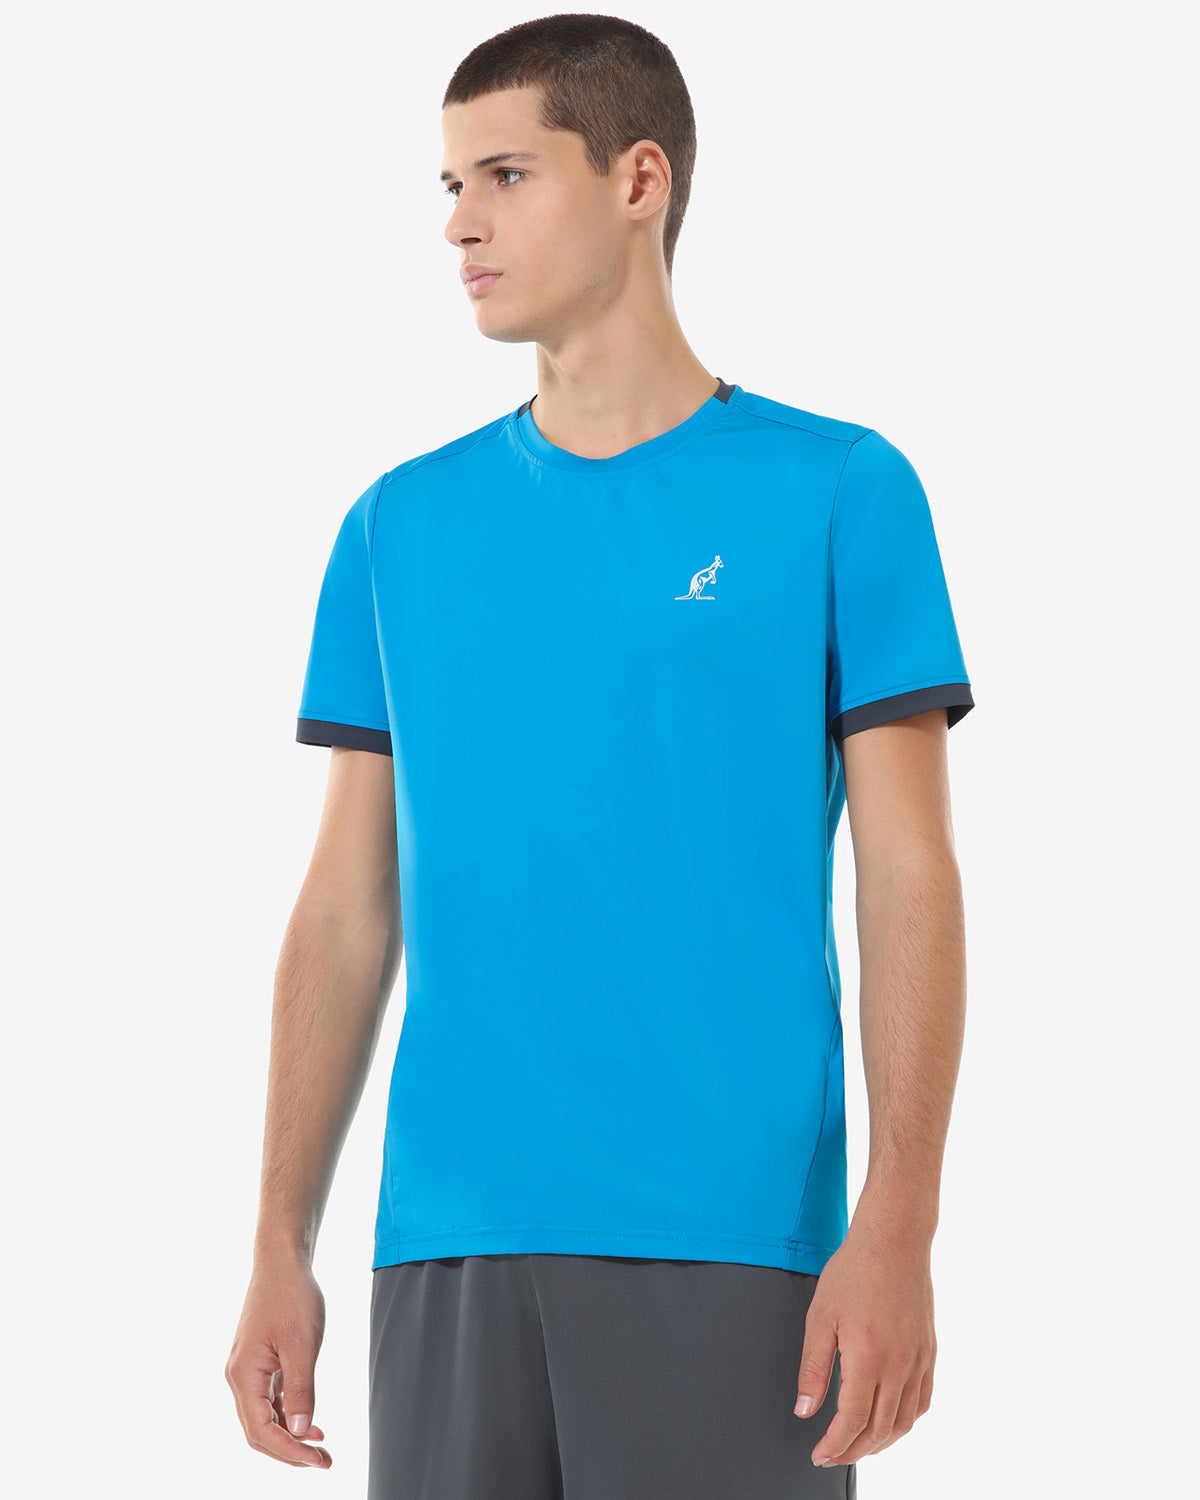 T-Shirt Team: Australian Tennis